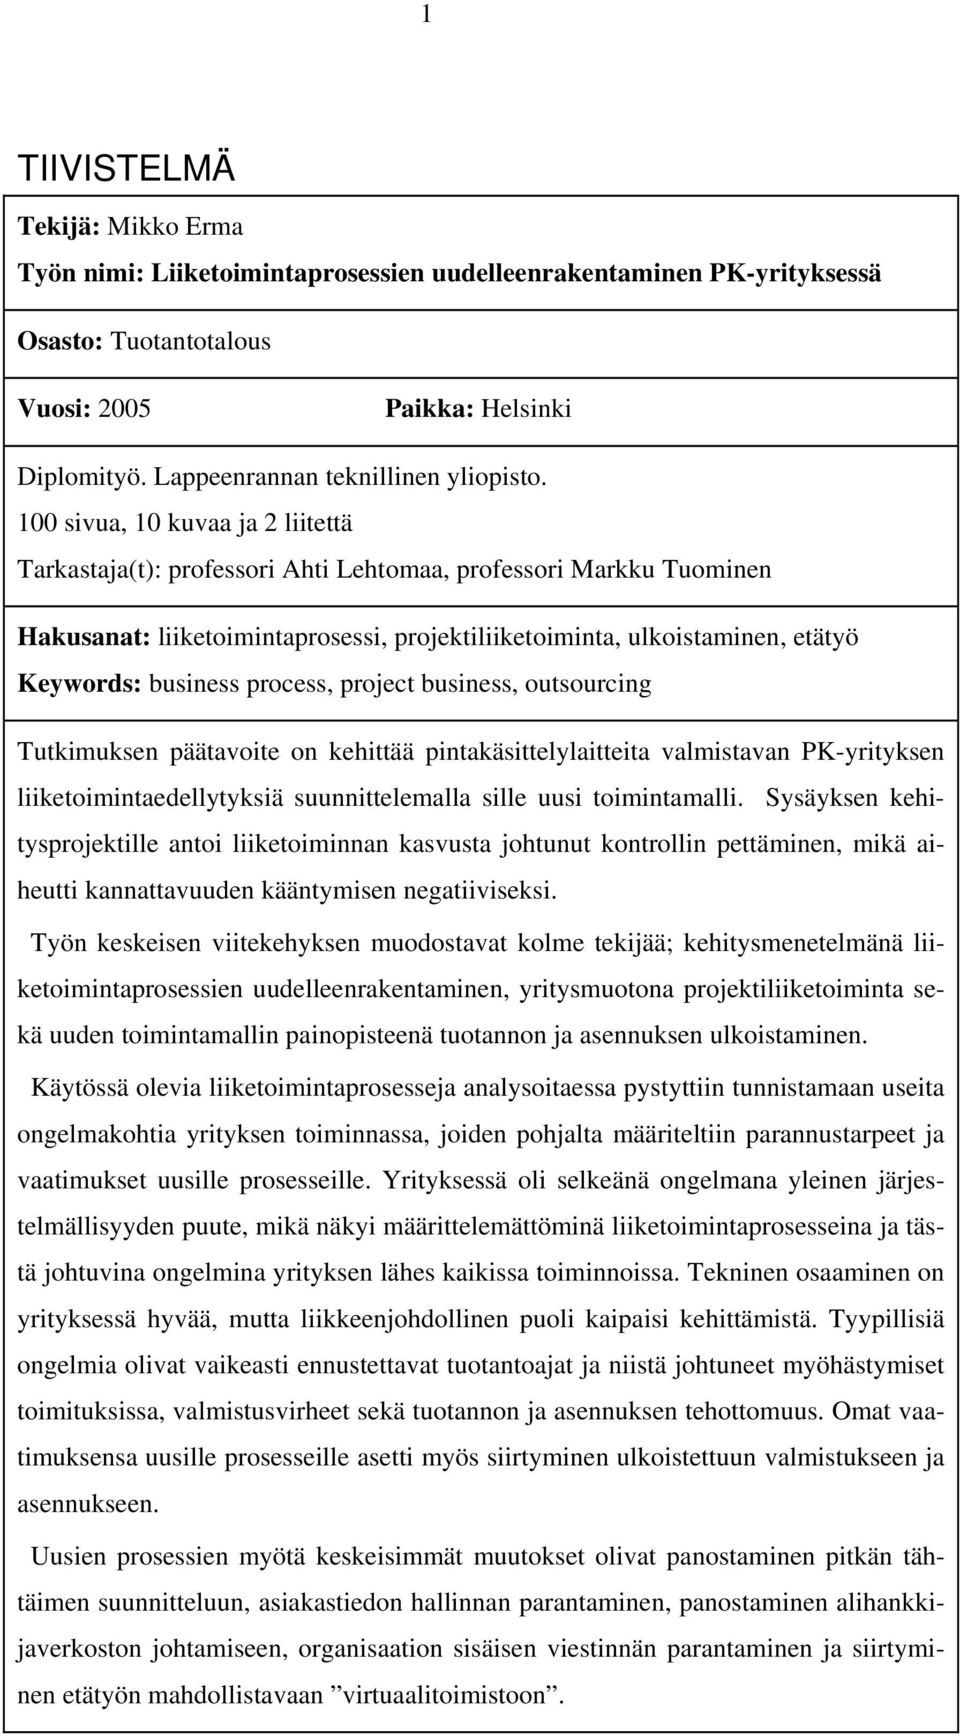 100 sivua, 10 kuvaa ja 2 liitettä Tarkastaja(t): professori Ahti Lehtomaa, professori Markku Tuominen Hakusanat: liiketoimintaprosessi, projektiliiketoiminta, ulkoistaminen, etätyö Keywords: business